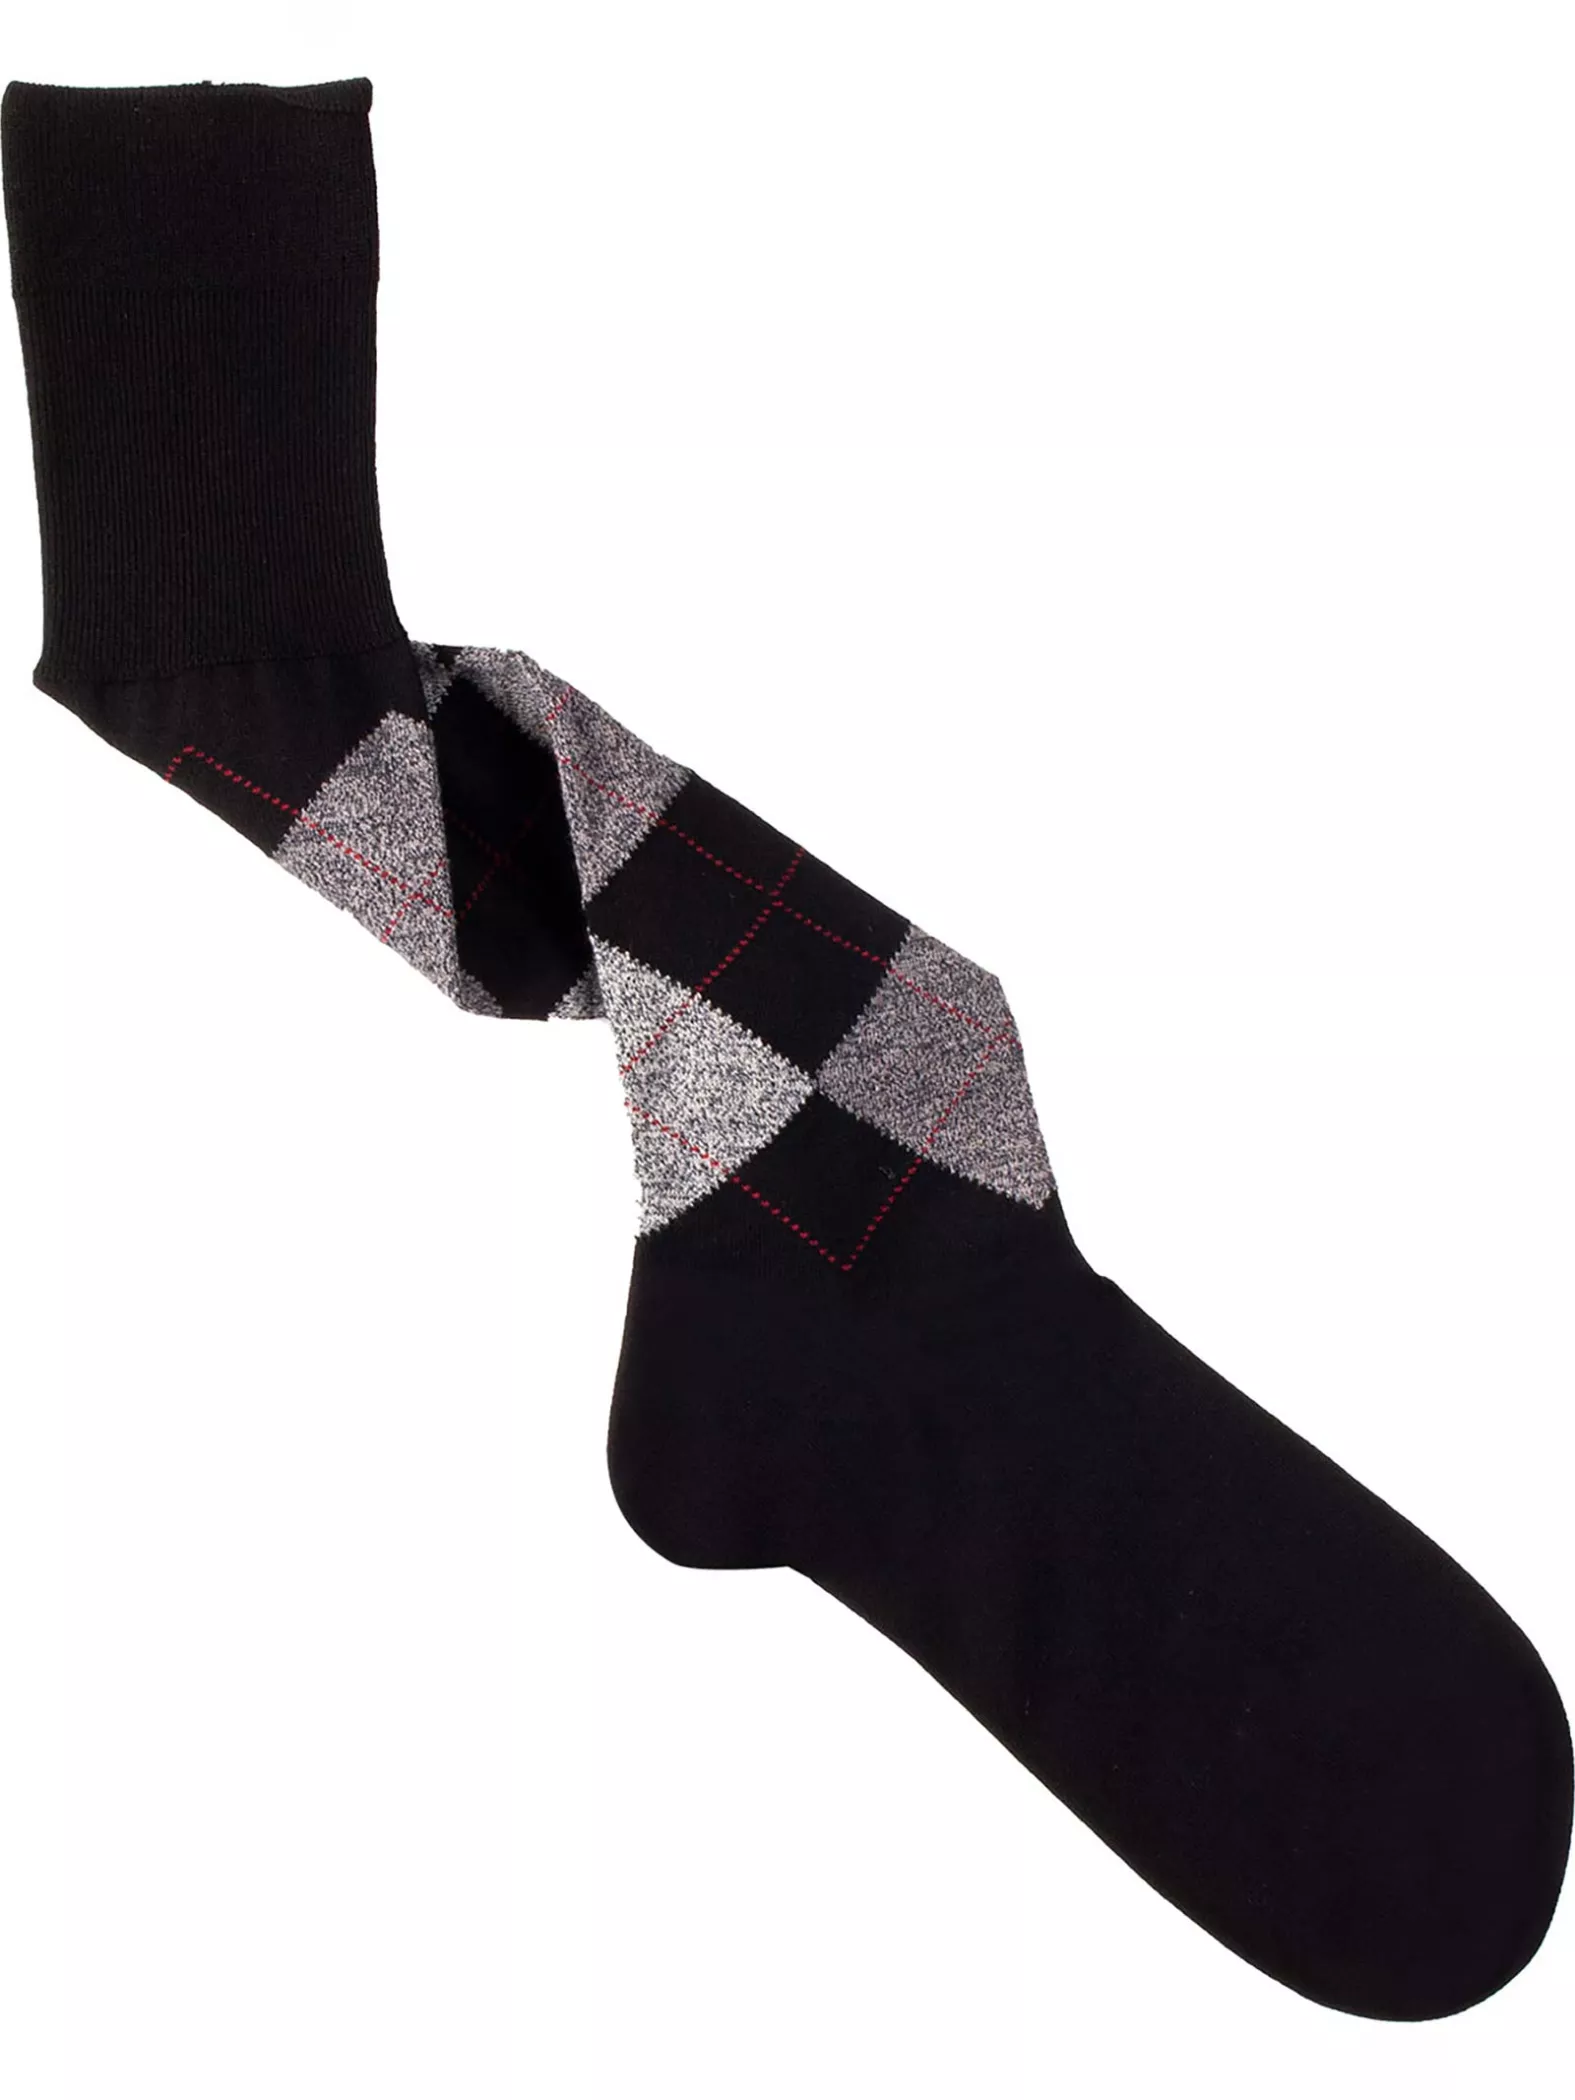 Geometric men's Knee High Socks